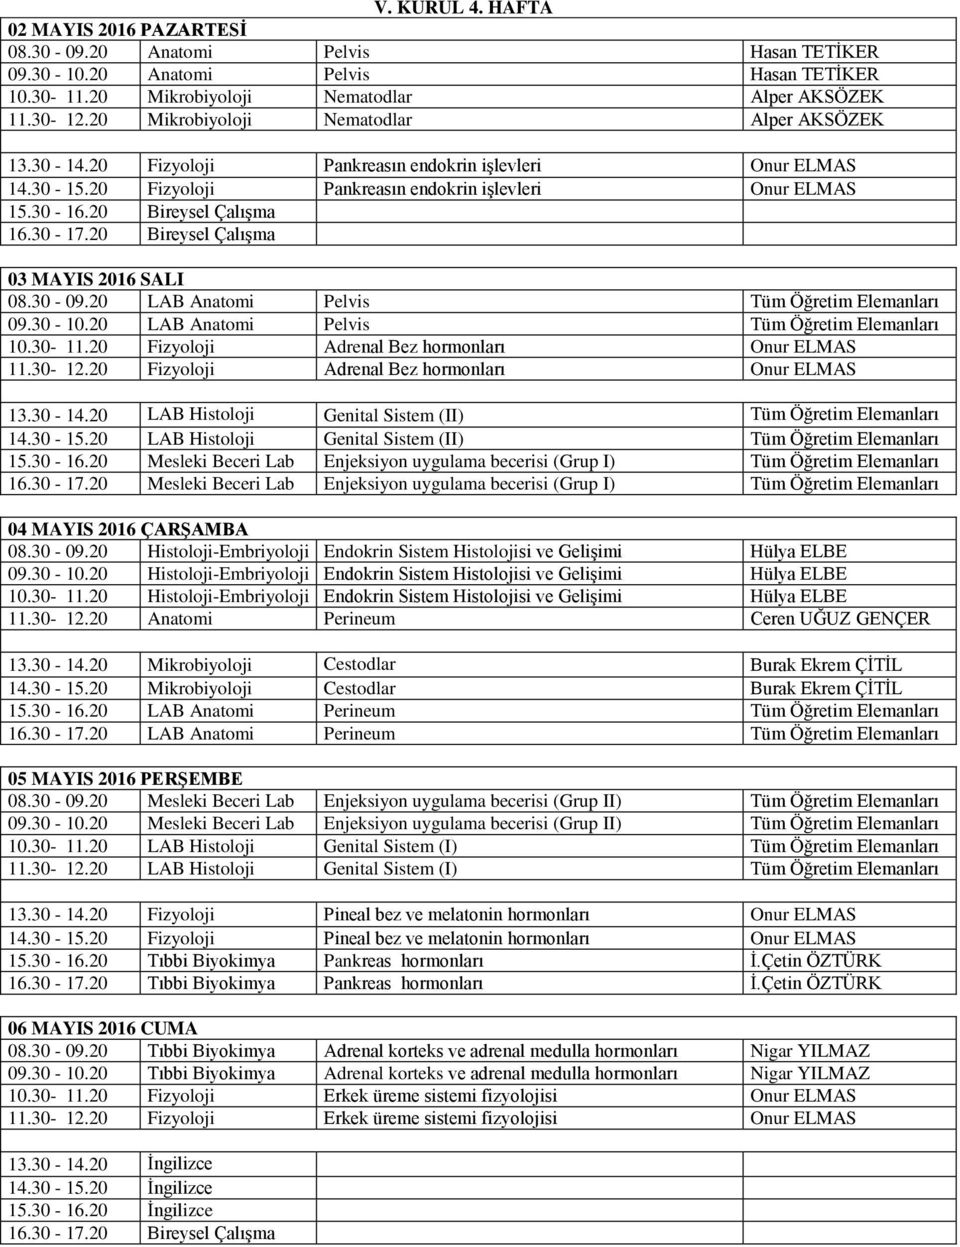 20 LAB Anatomi Pelvis Tüm Öğretim Elemanları 09.30-10.20 LAB Anatomi Pelvis Tüm Öğretim Elemanları 10.30-11.20 Fizyoloji Adrenal Bez hormonları Onur ELMAS 11.30-12.